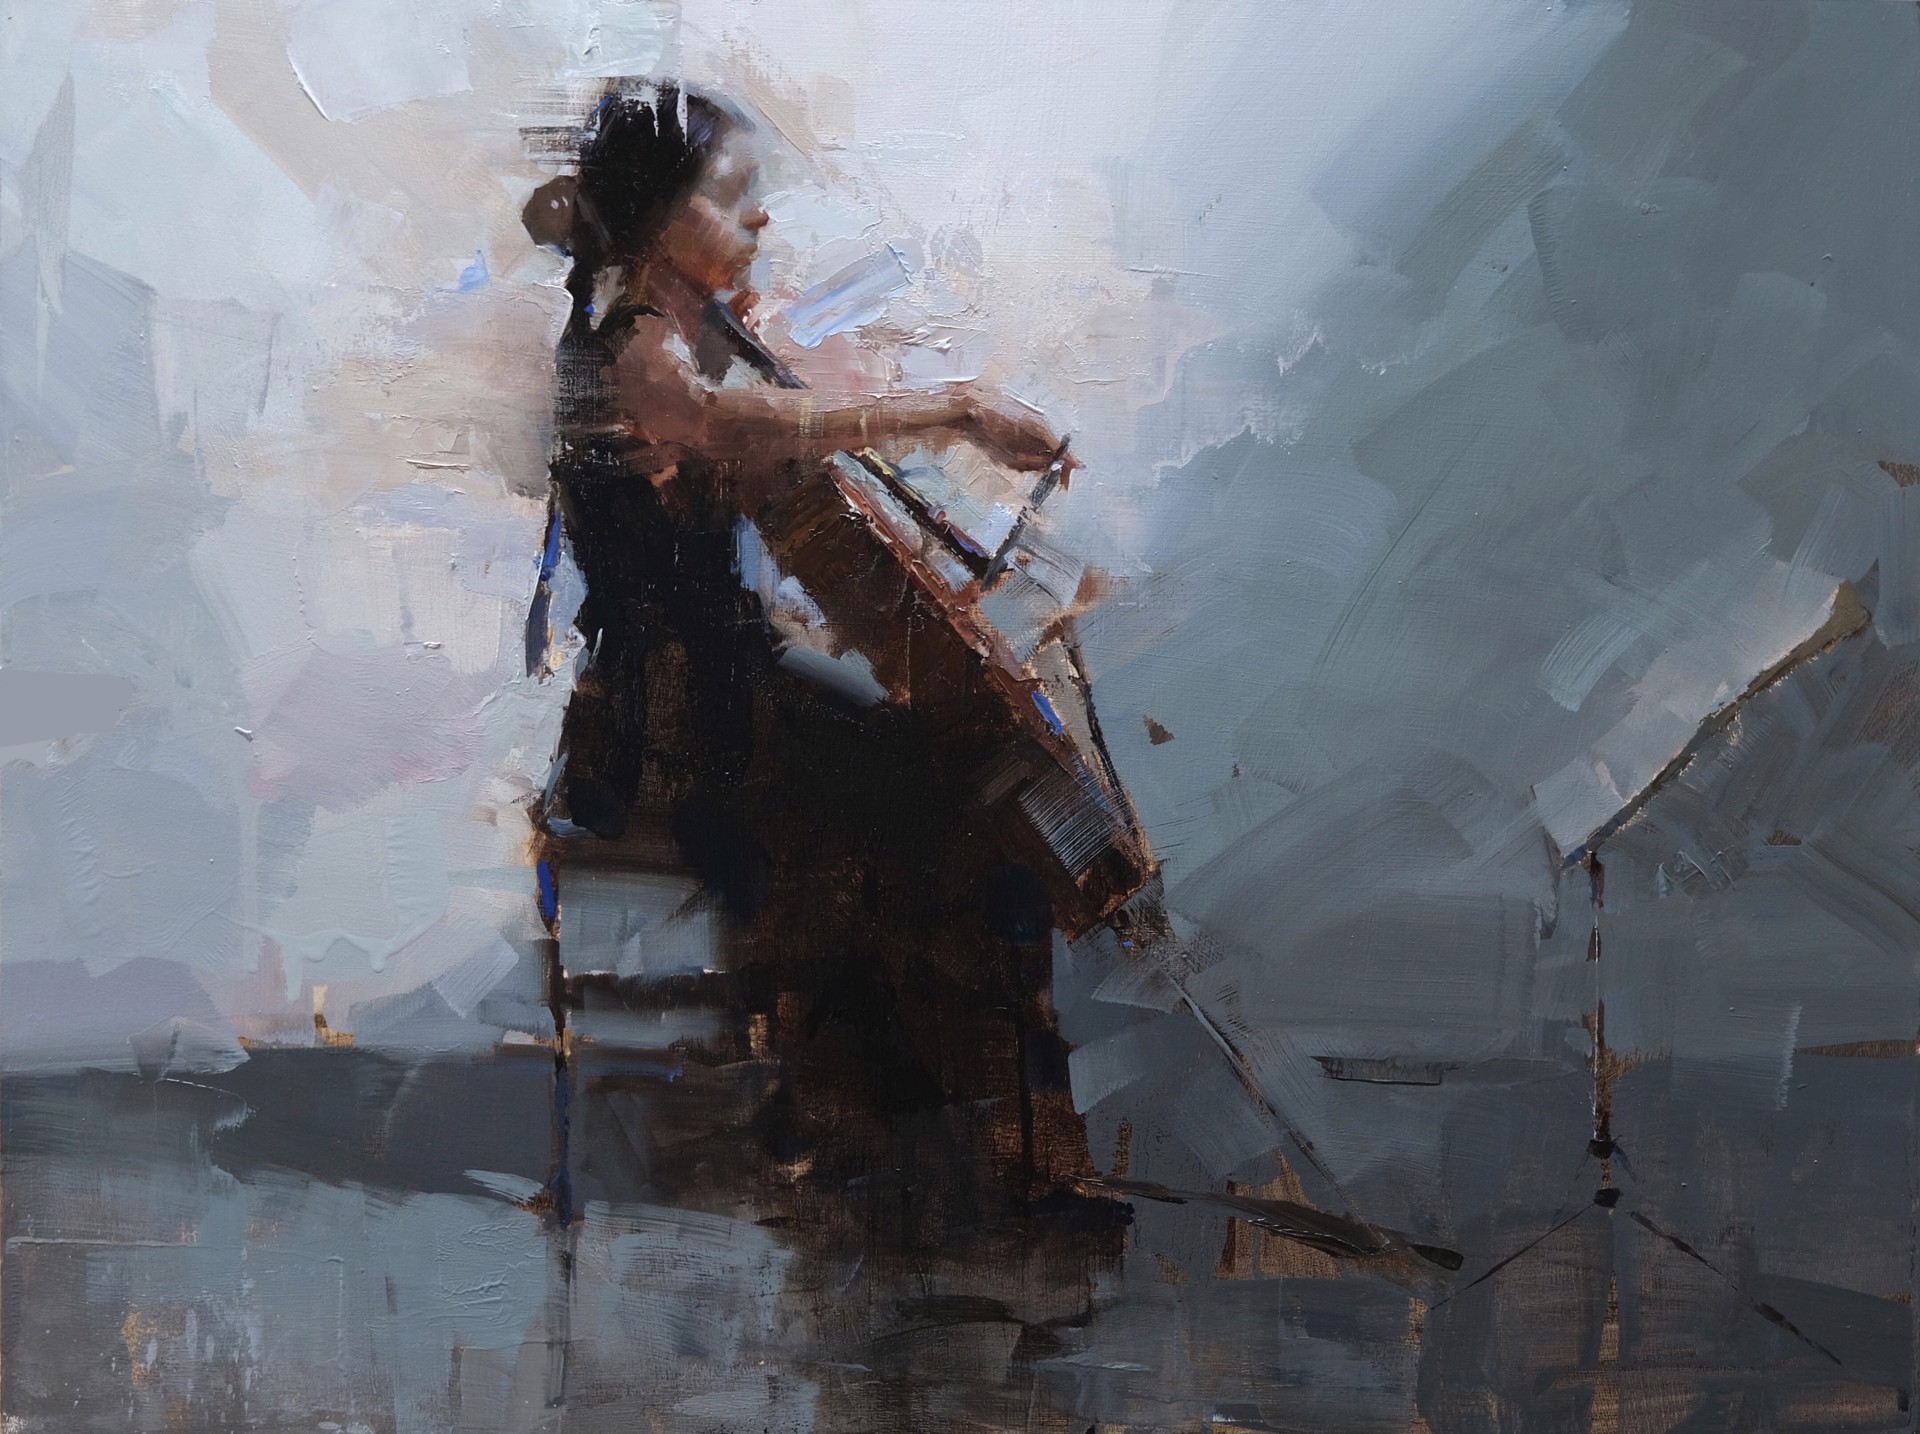 Cello by Jacob Dhein